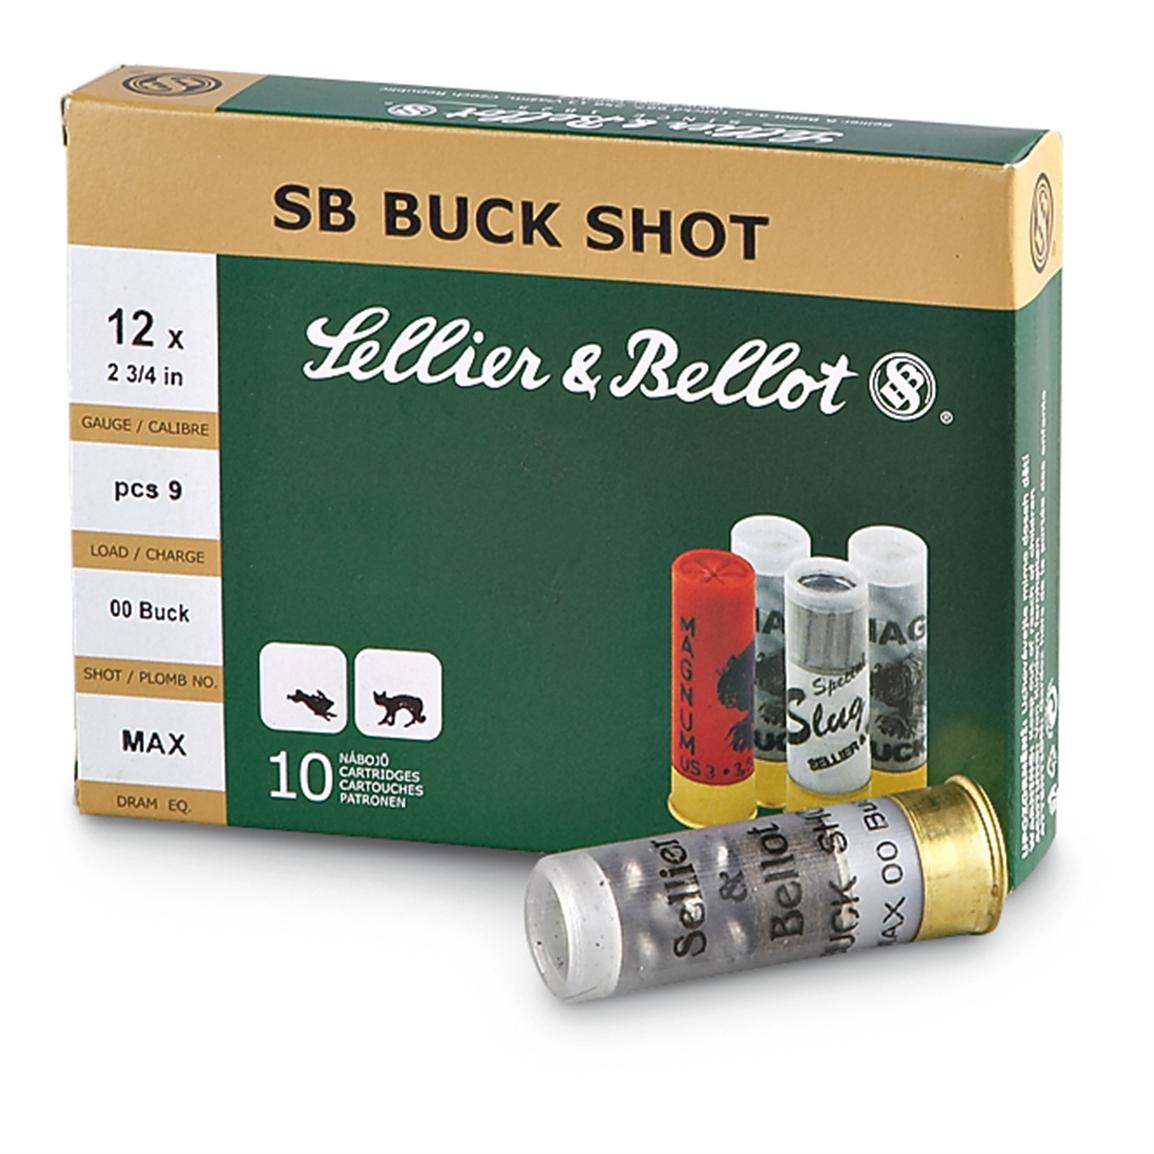 Sellier & Bellot Buckshot, 2 3/4" 12 Gauge, 00 Buckshot, 9 Pellets, 10 Rounds